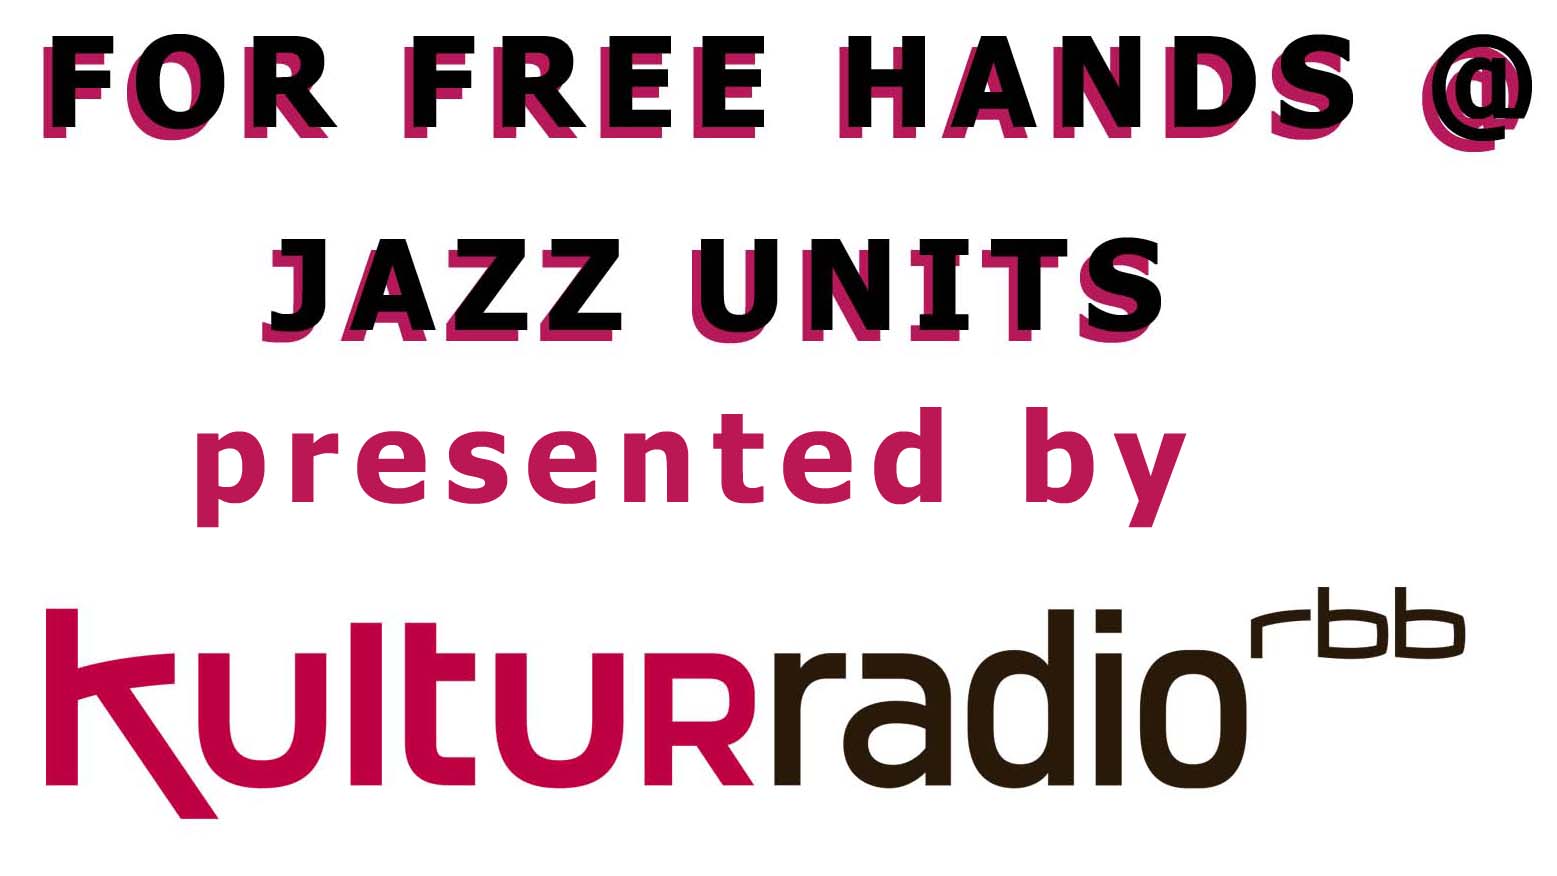 FFH @ Jazz Units – 3 new Videos + RBB broadcast